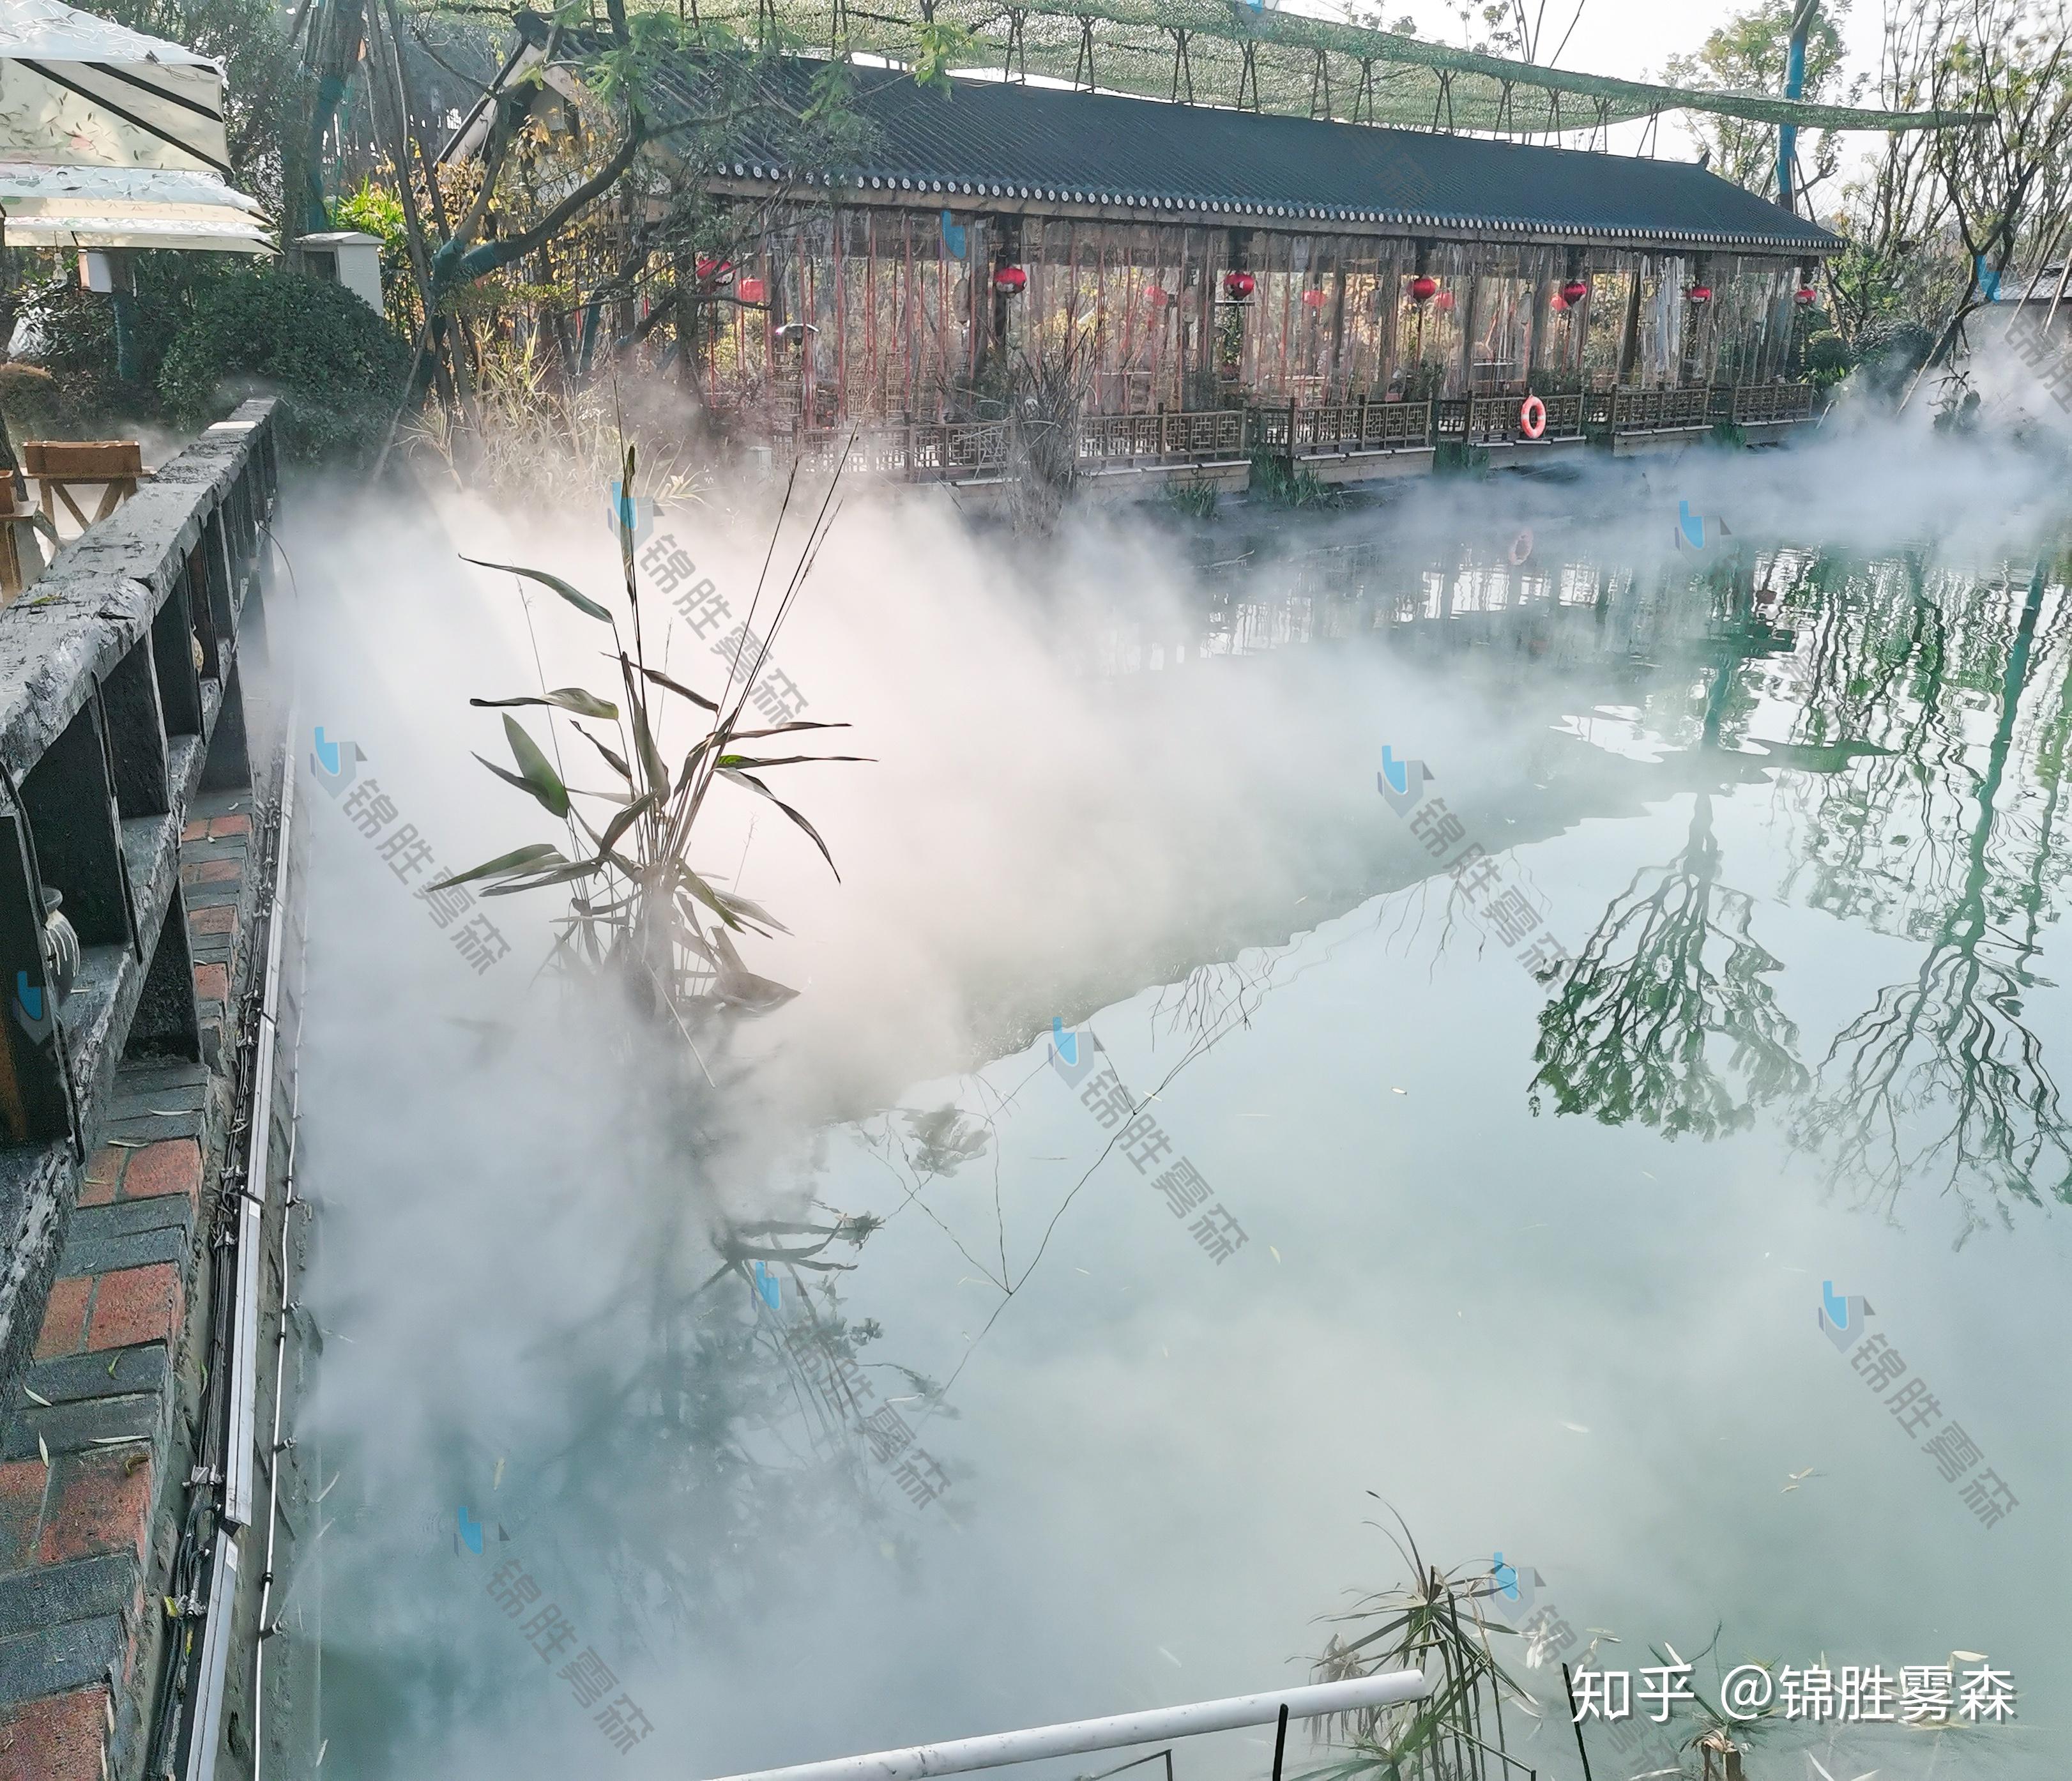 成都锦胜雾森人造雾系统体验雾与景与山与水呈现出的独特气质